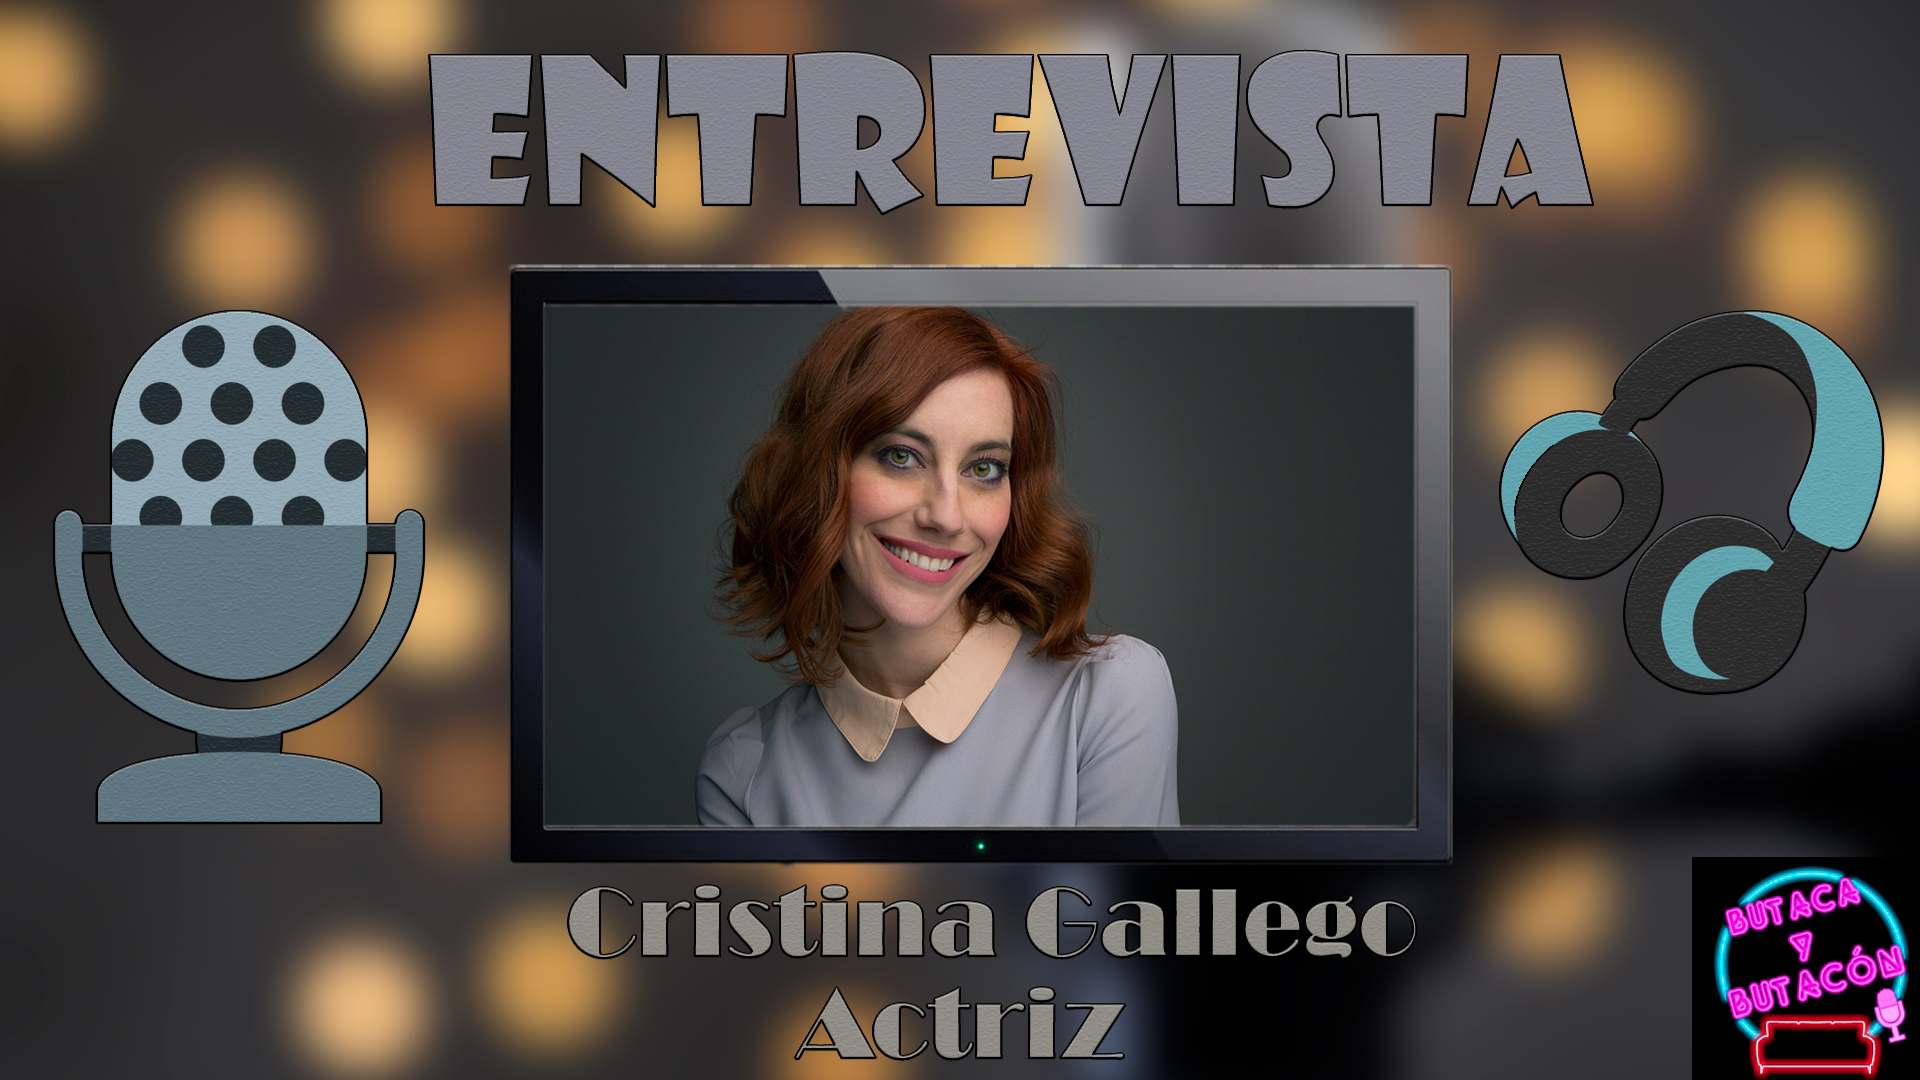 Cristina Gallego, la sonrisa del talento y la tenacidad